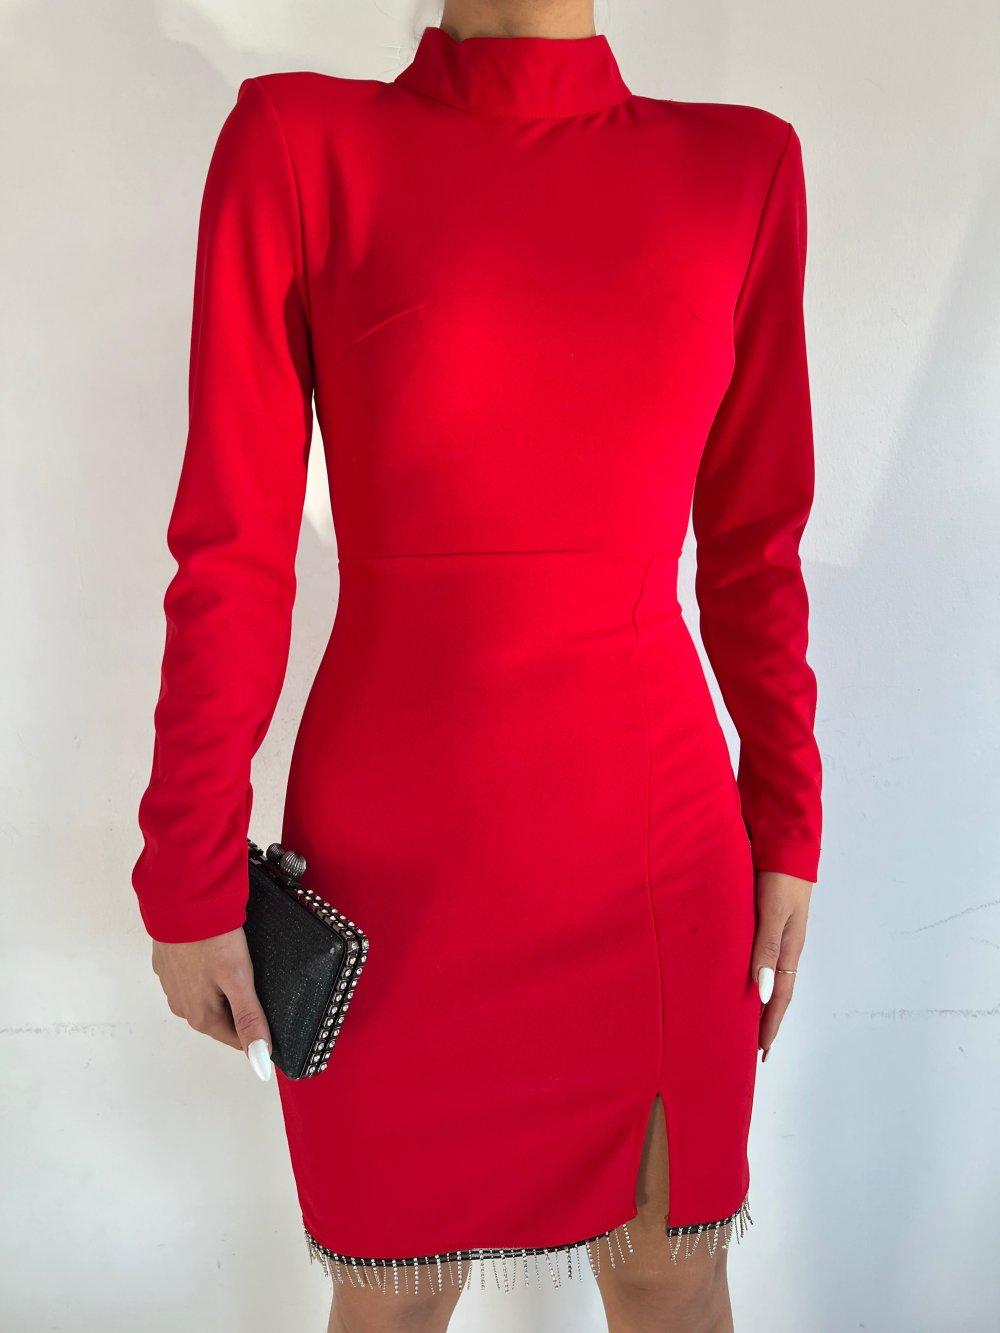 Etek Ucu Taşlı Dik Yaka Elbise 3758 J-6 Kırmızı